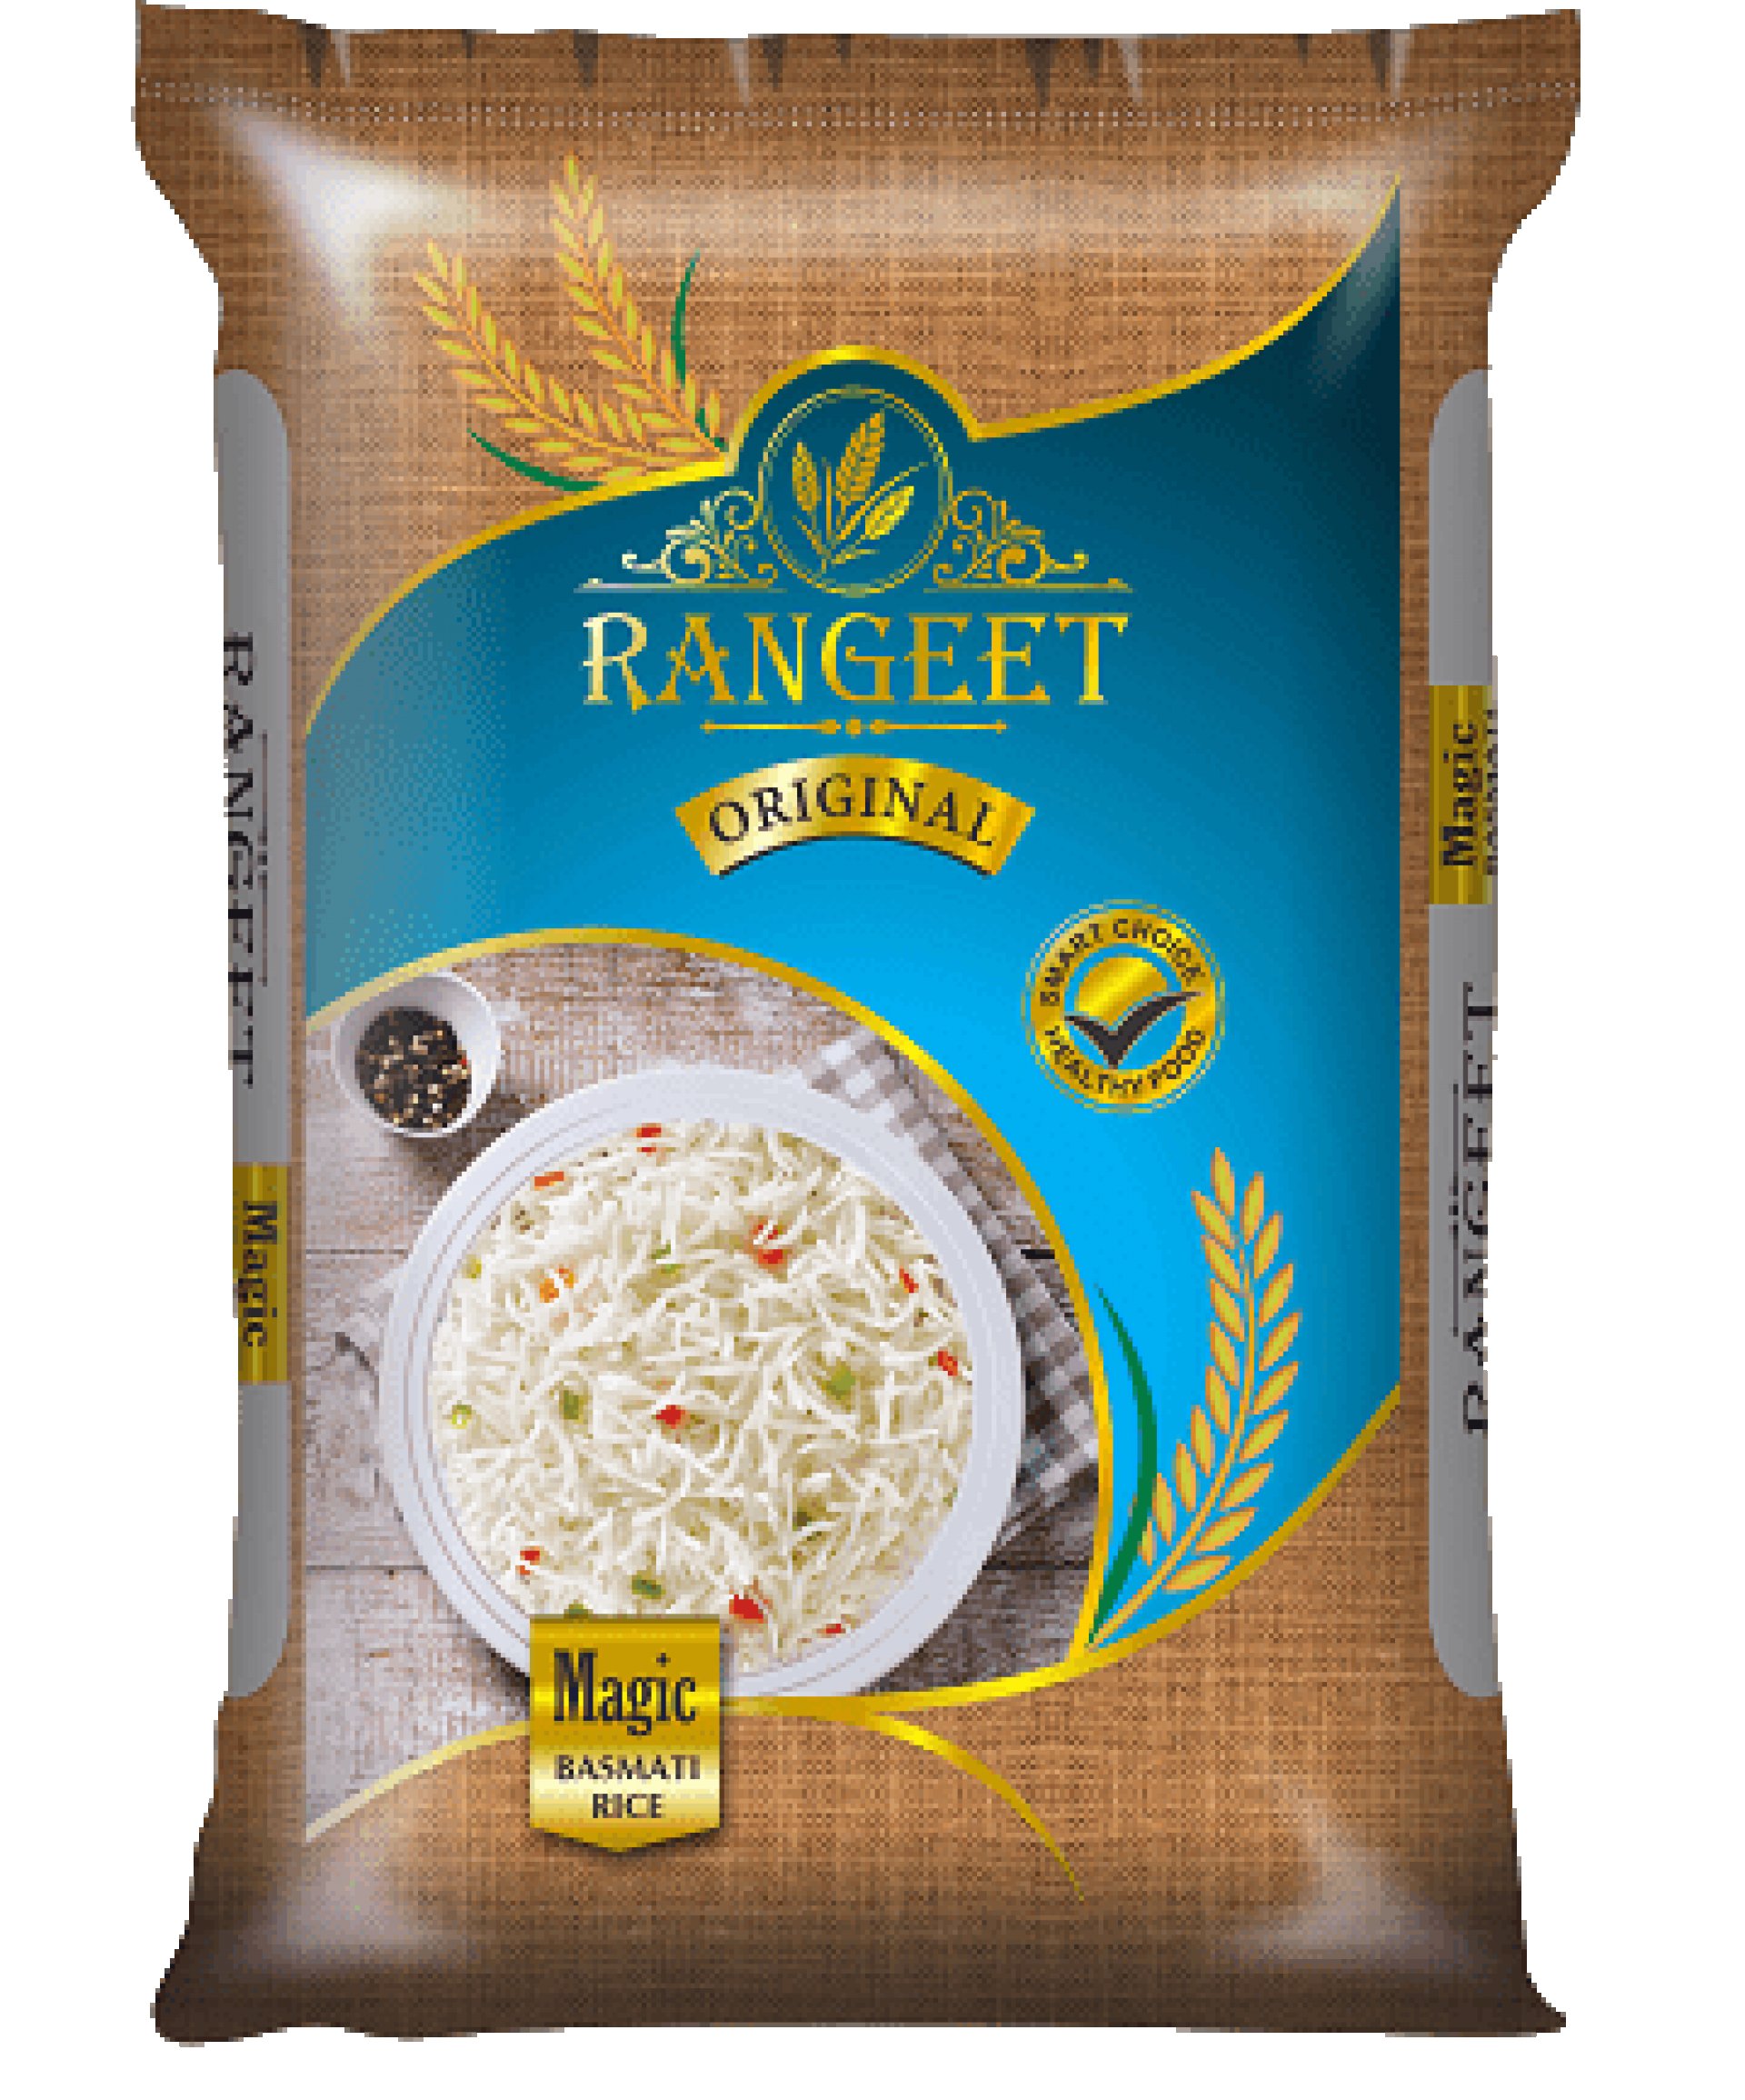 Daawat Basmati Rice - Biryani, 5 kg Bag Basmati Rice (Long Grain) Price in  India - Buy Daawat Basmati Rice - Biryani, 5 kg Bag Basmati Rice (Long  Grain) online at Flipkart.com